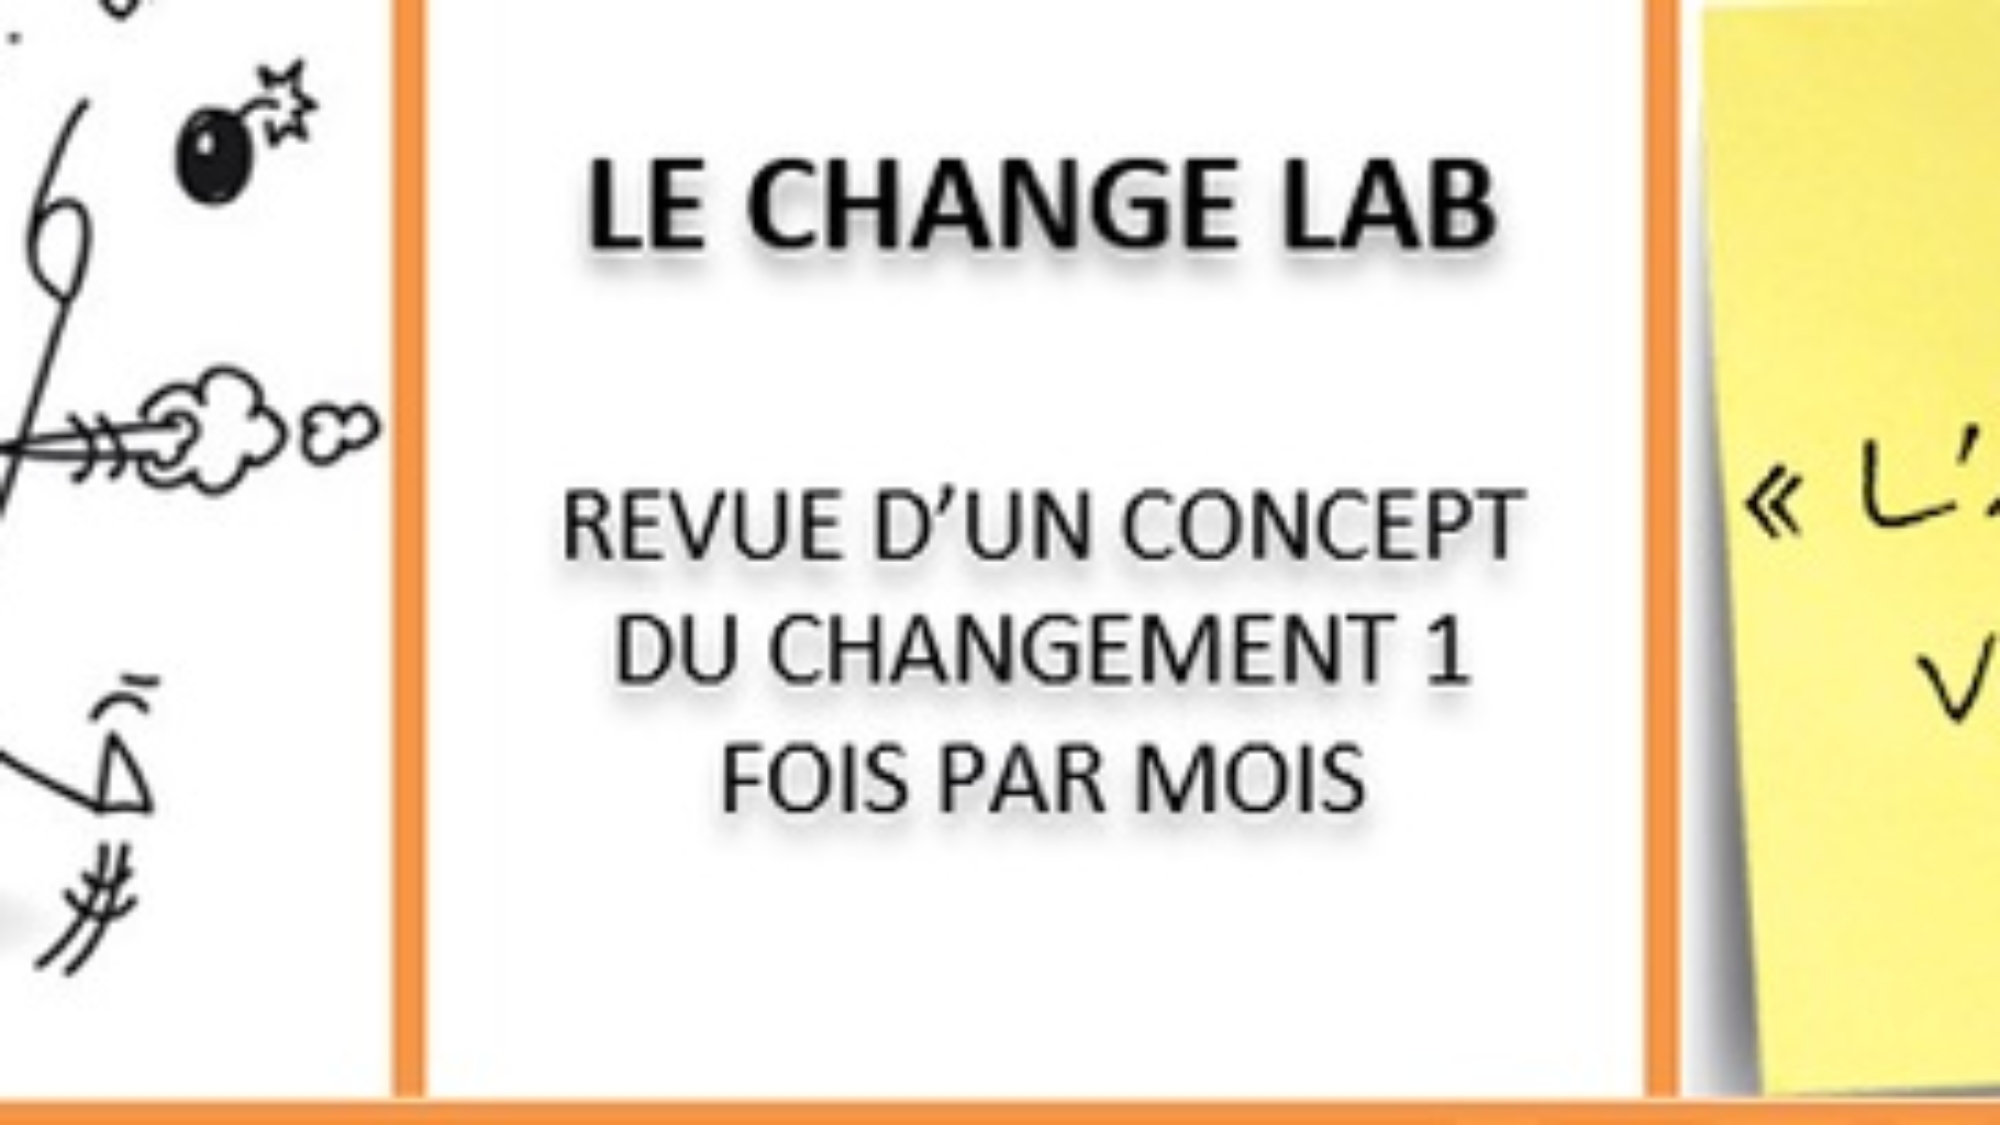 Dernier atelier changestorming chez myCowork Montorgueil Management du changement